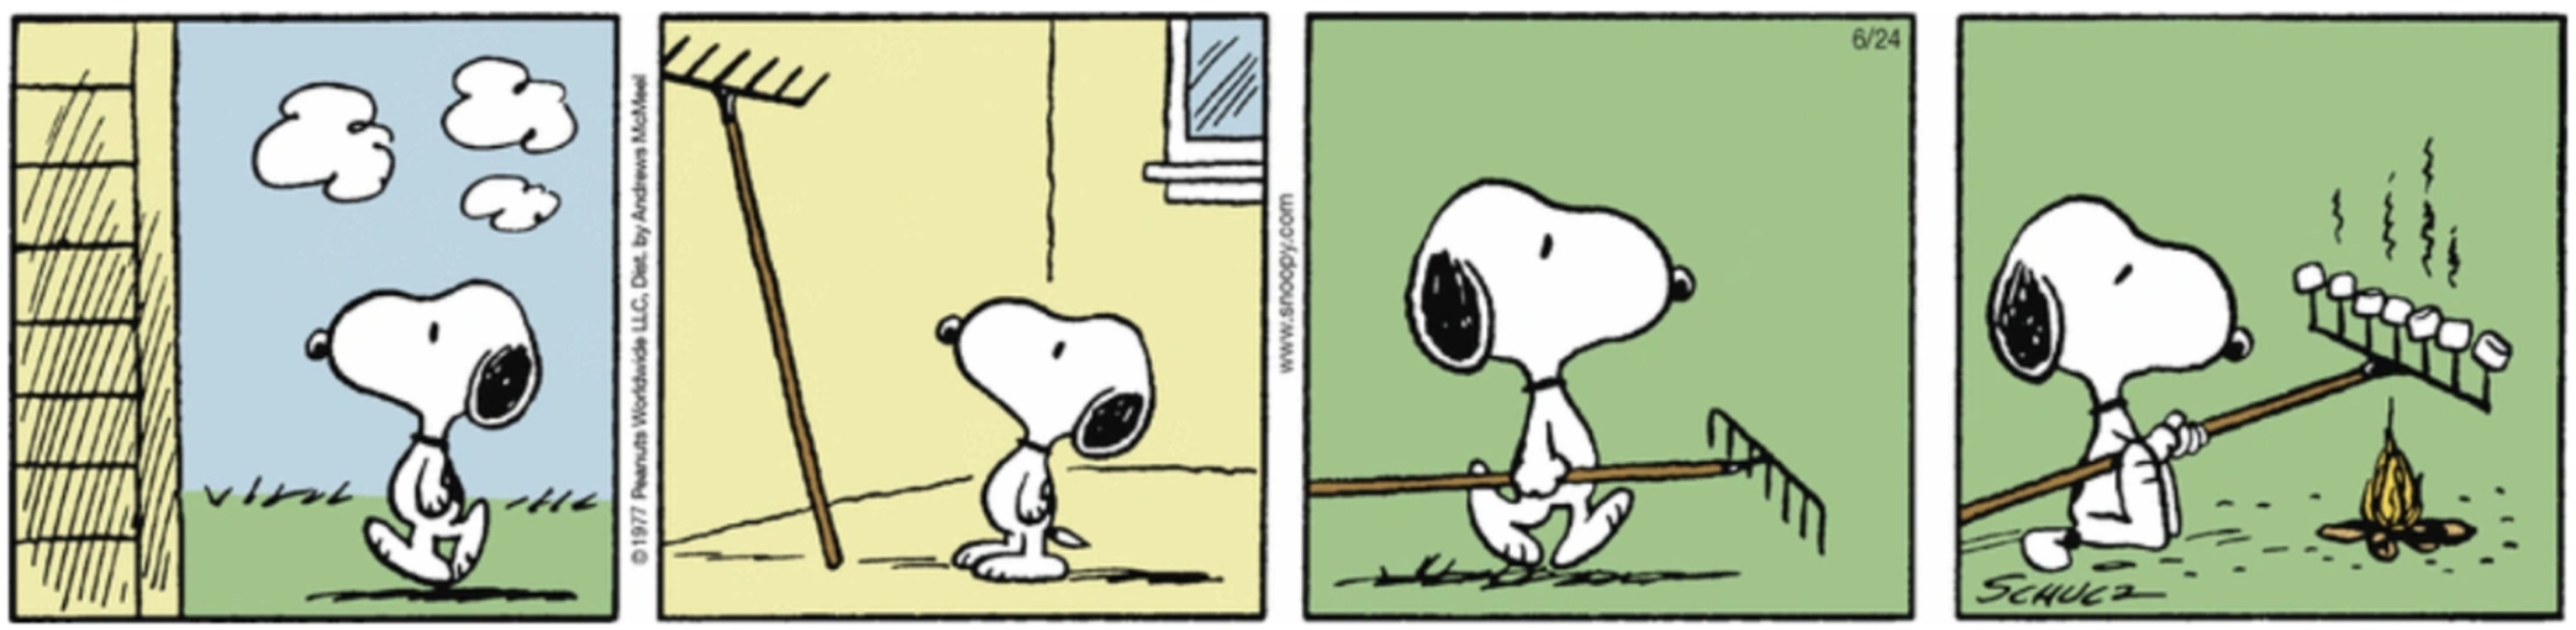 No Peanuts Summer, Snoopy usa um ancinho como suporte para torrar seus marshmallows no fogo.